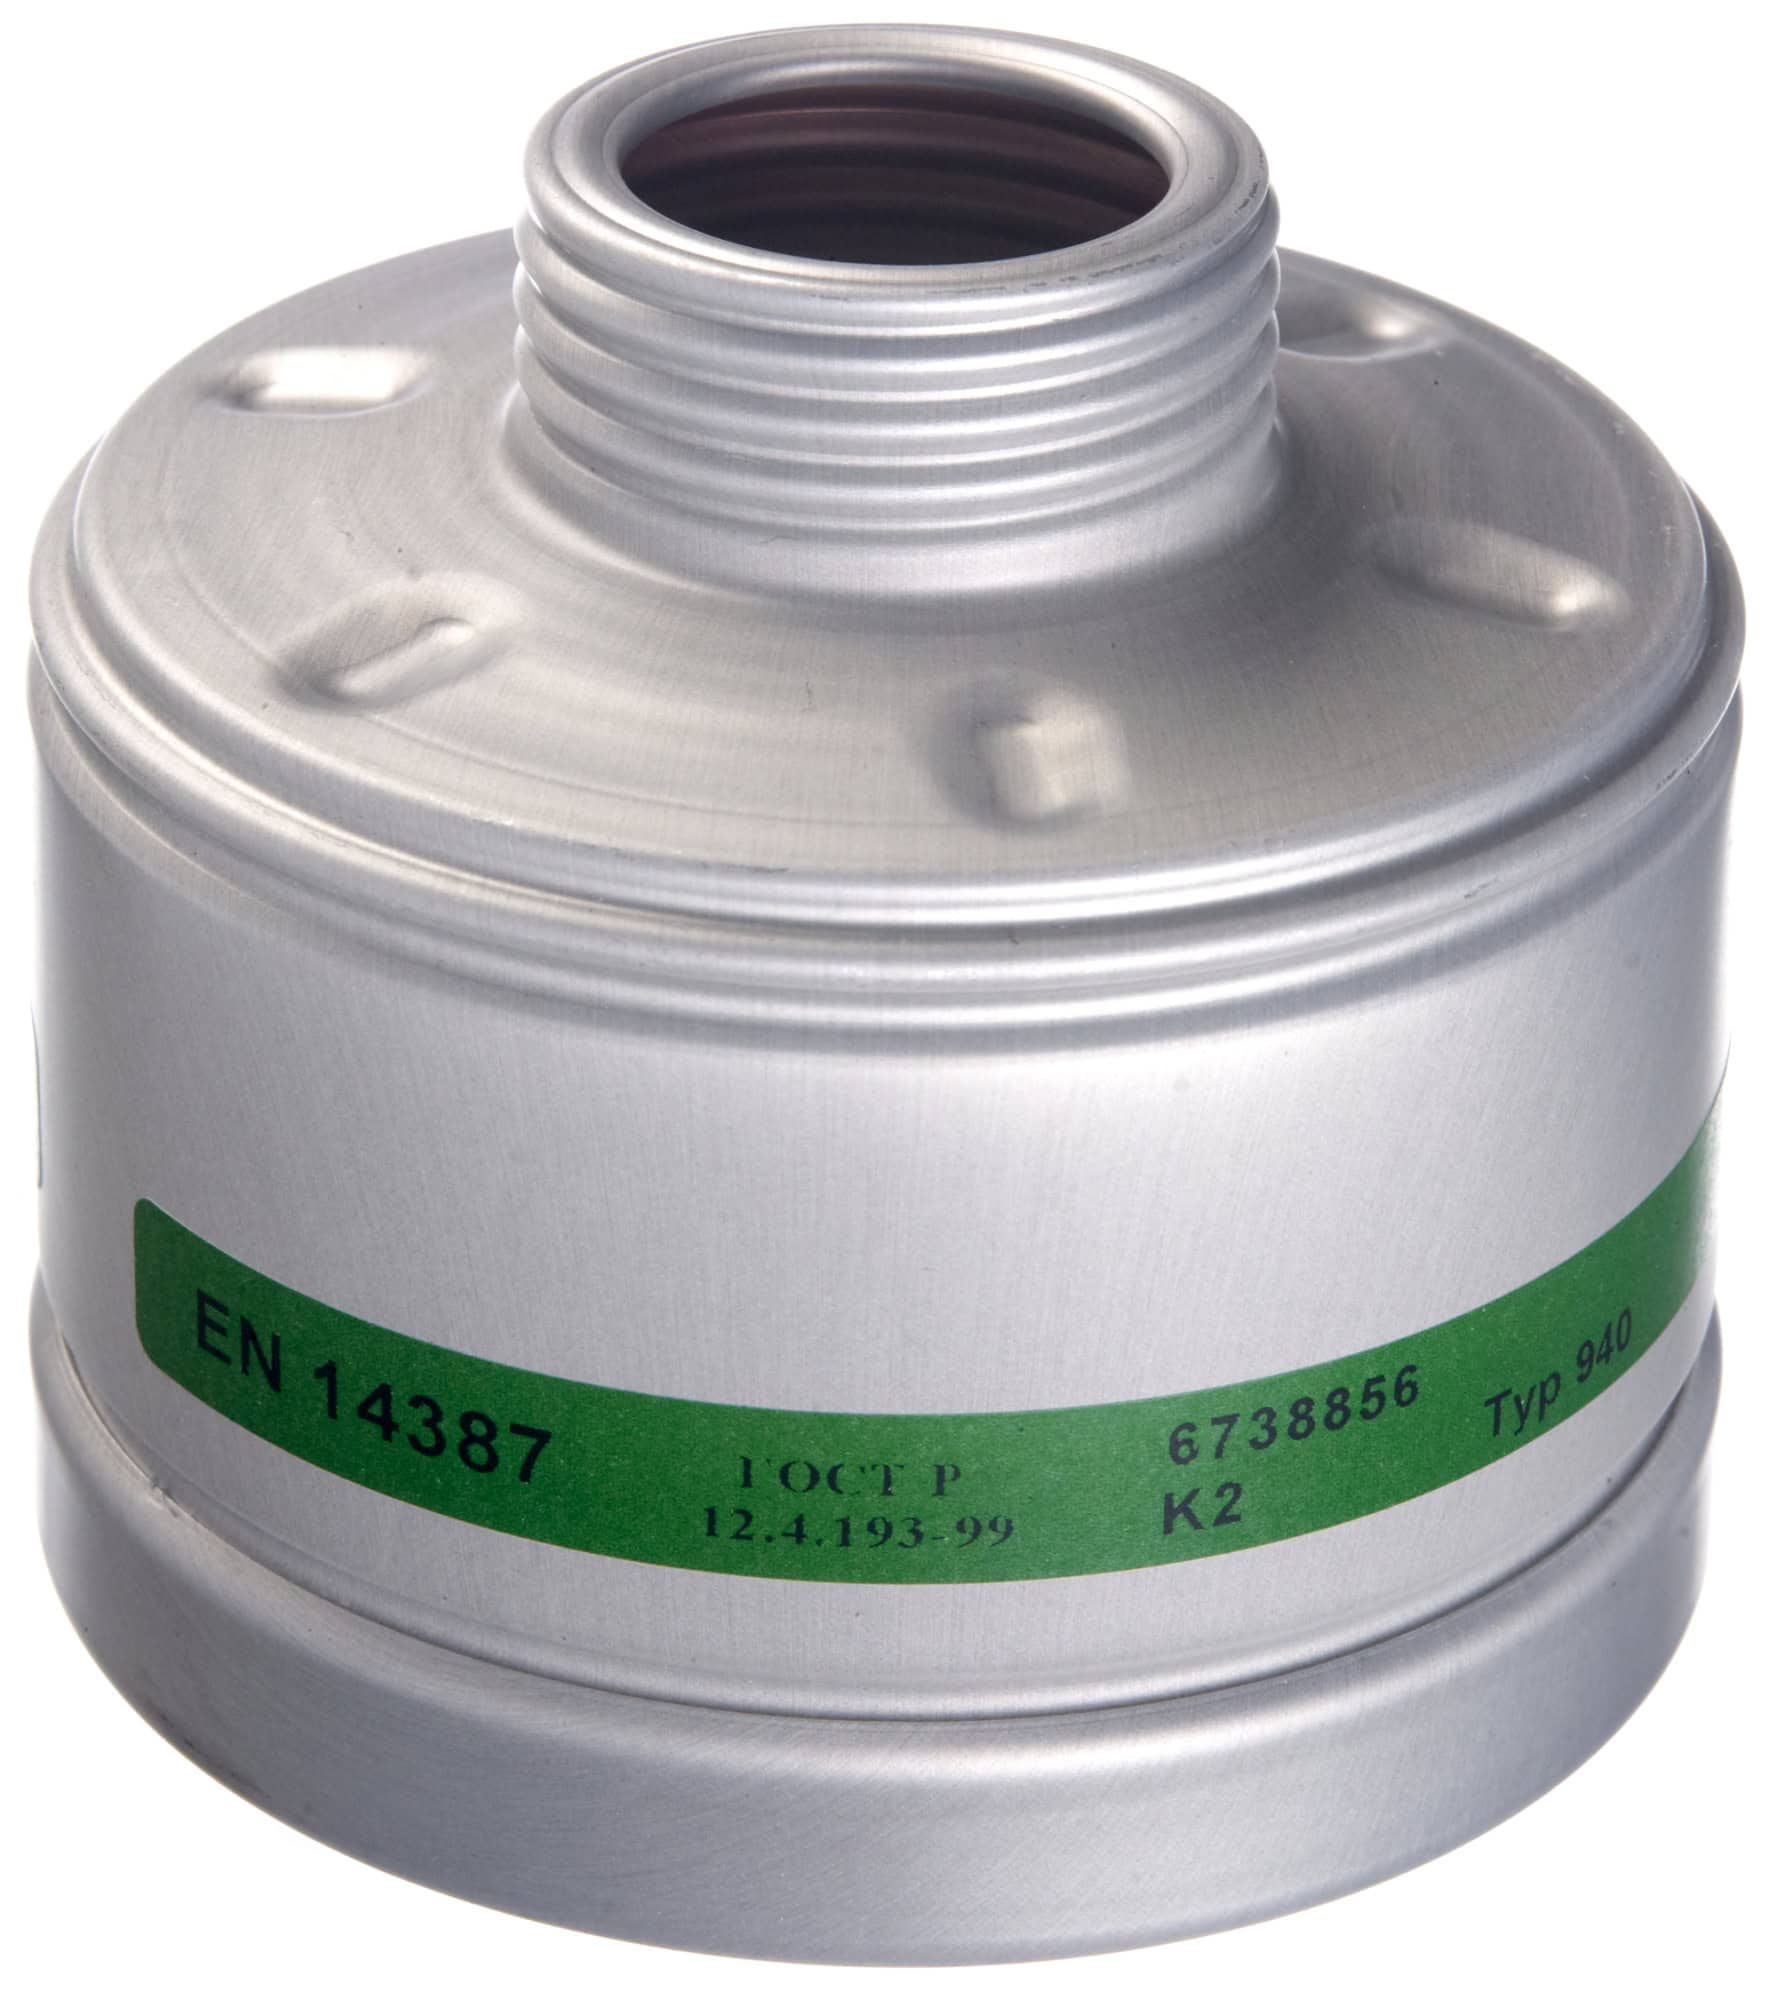 Dräger® X-plore® RD40 Gasfilter 940, 6738856, K2 R, 40 mm Rundfilteranschluss [NATO Standard], Gasfilter gegen Ammoniak und org. Ammoniakderivate